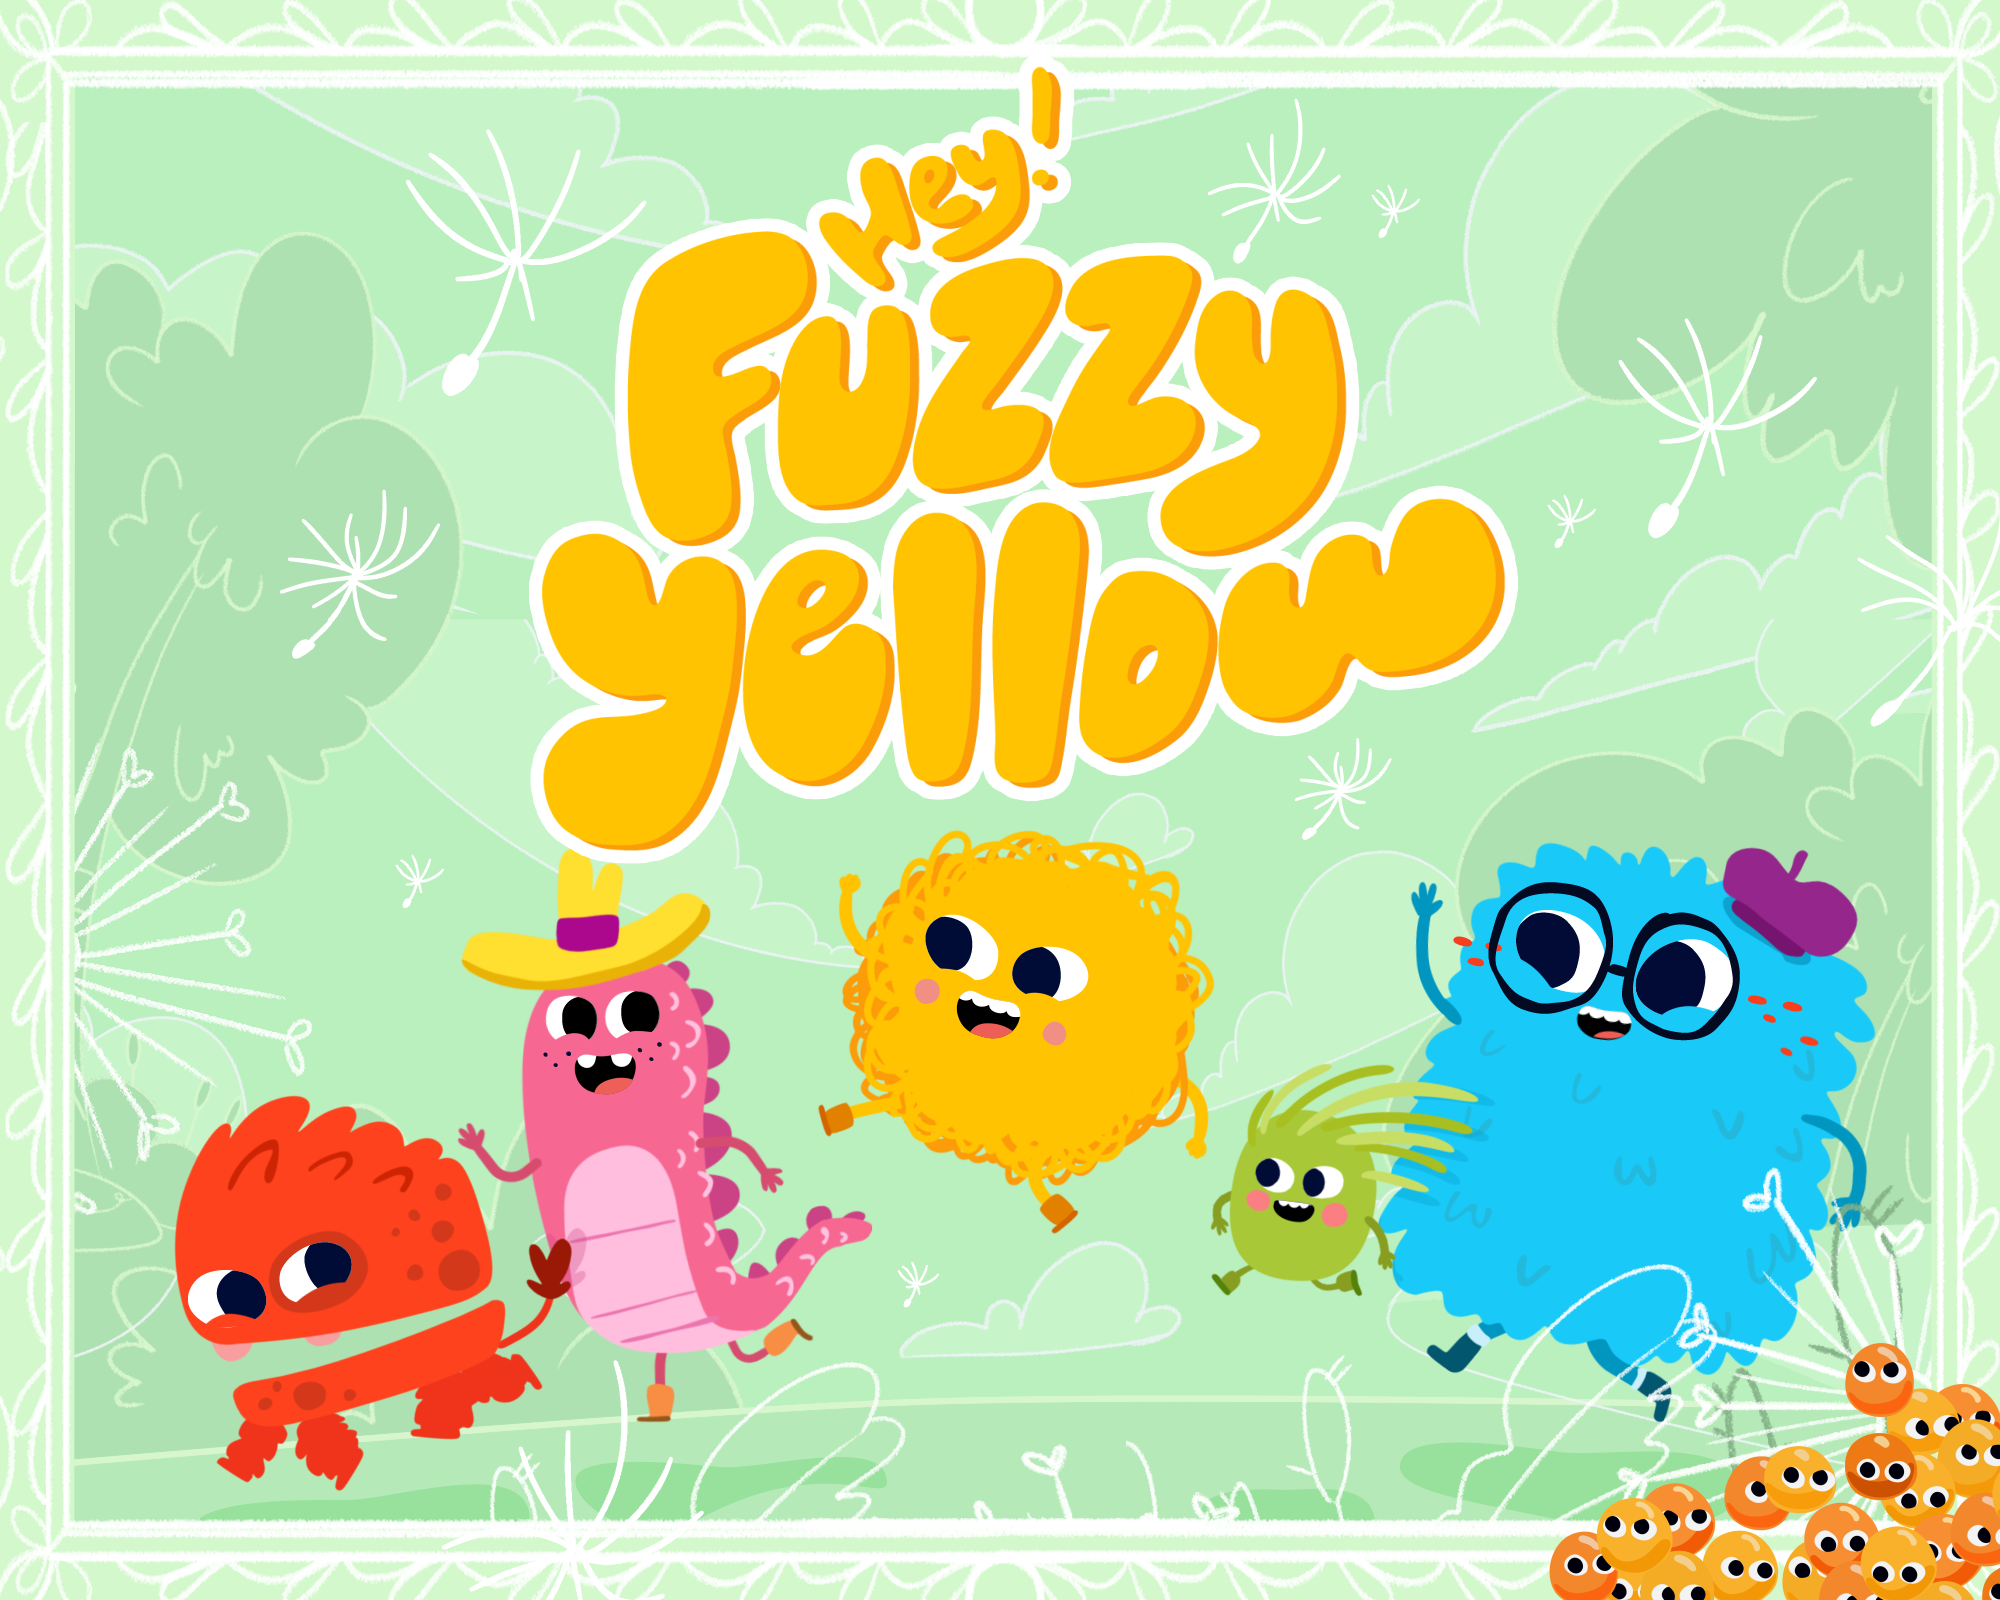 Hey! Fuzzy Yellow